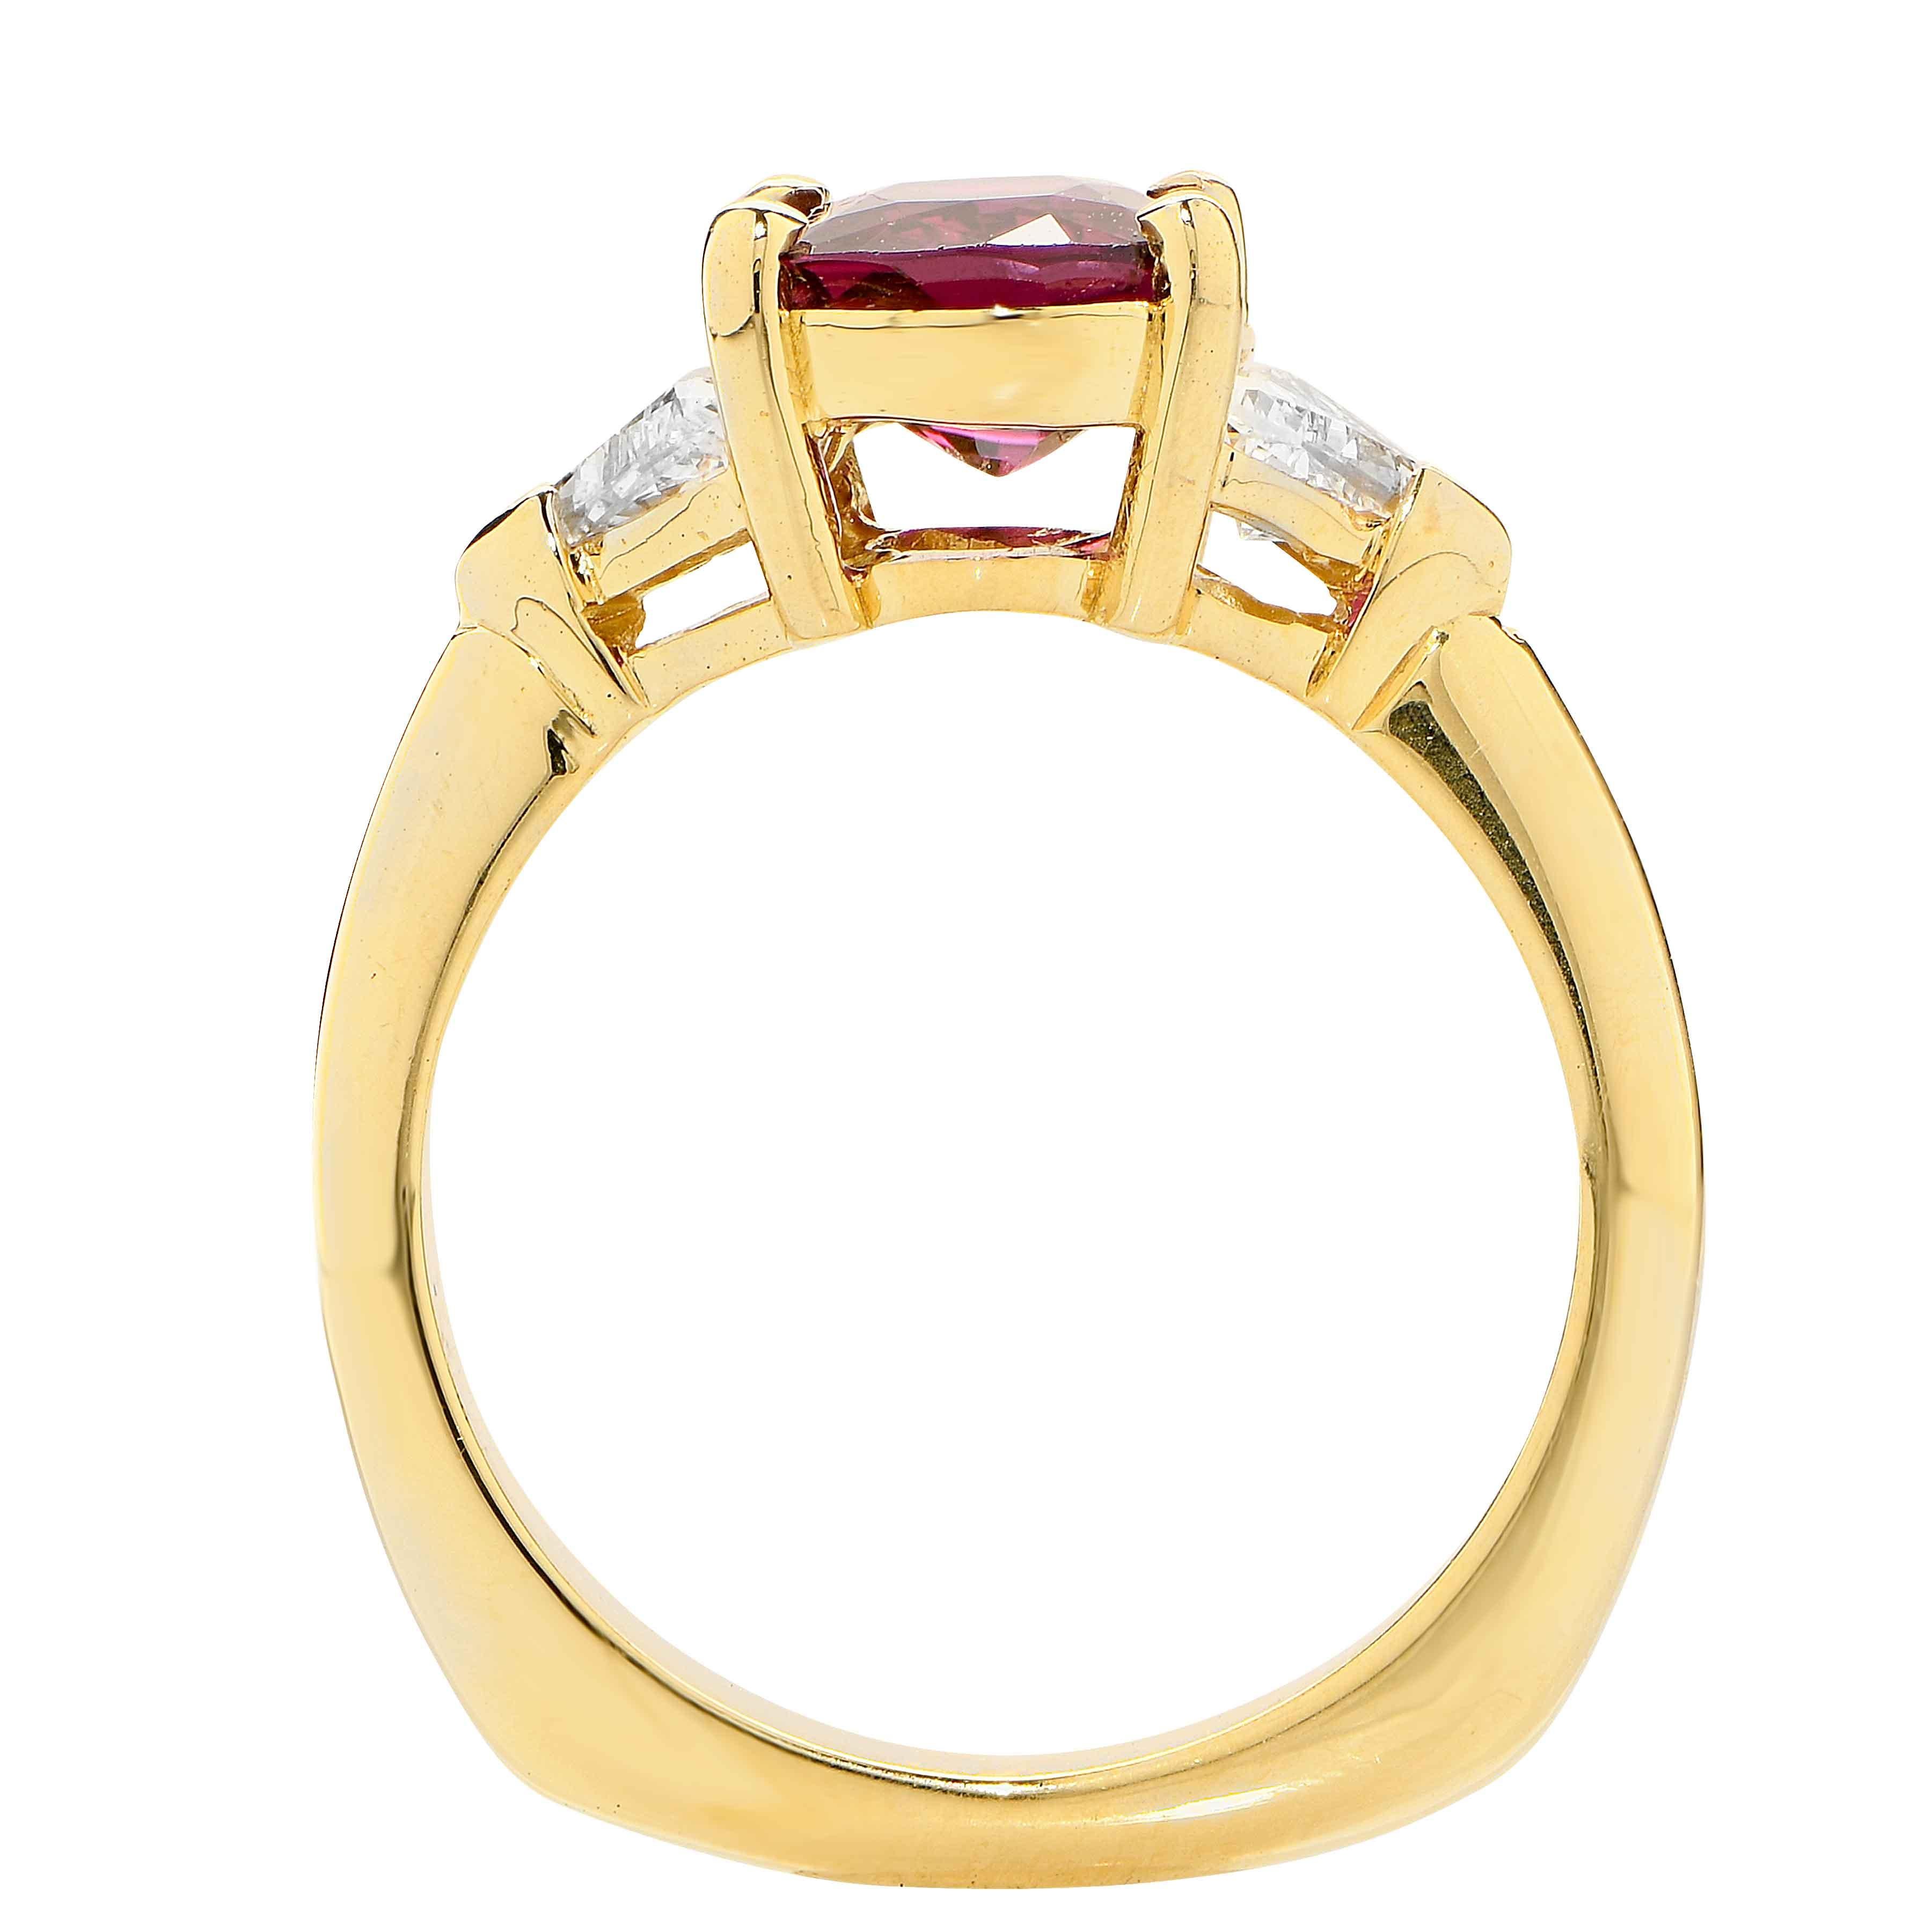 Modern 2.25 Carat Ruby and Diamond Ring 18 Karat Yellow Gold